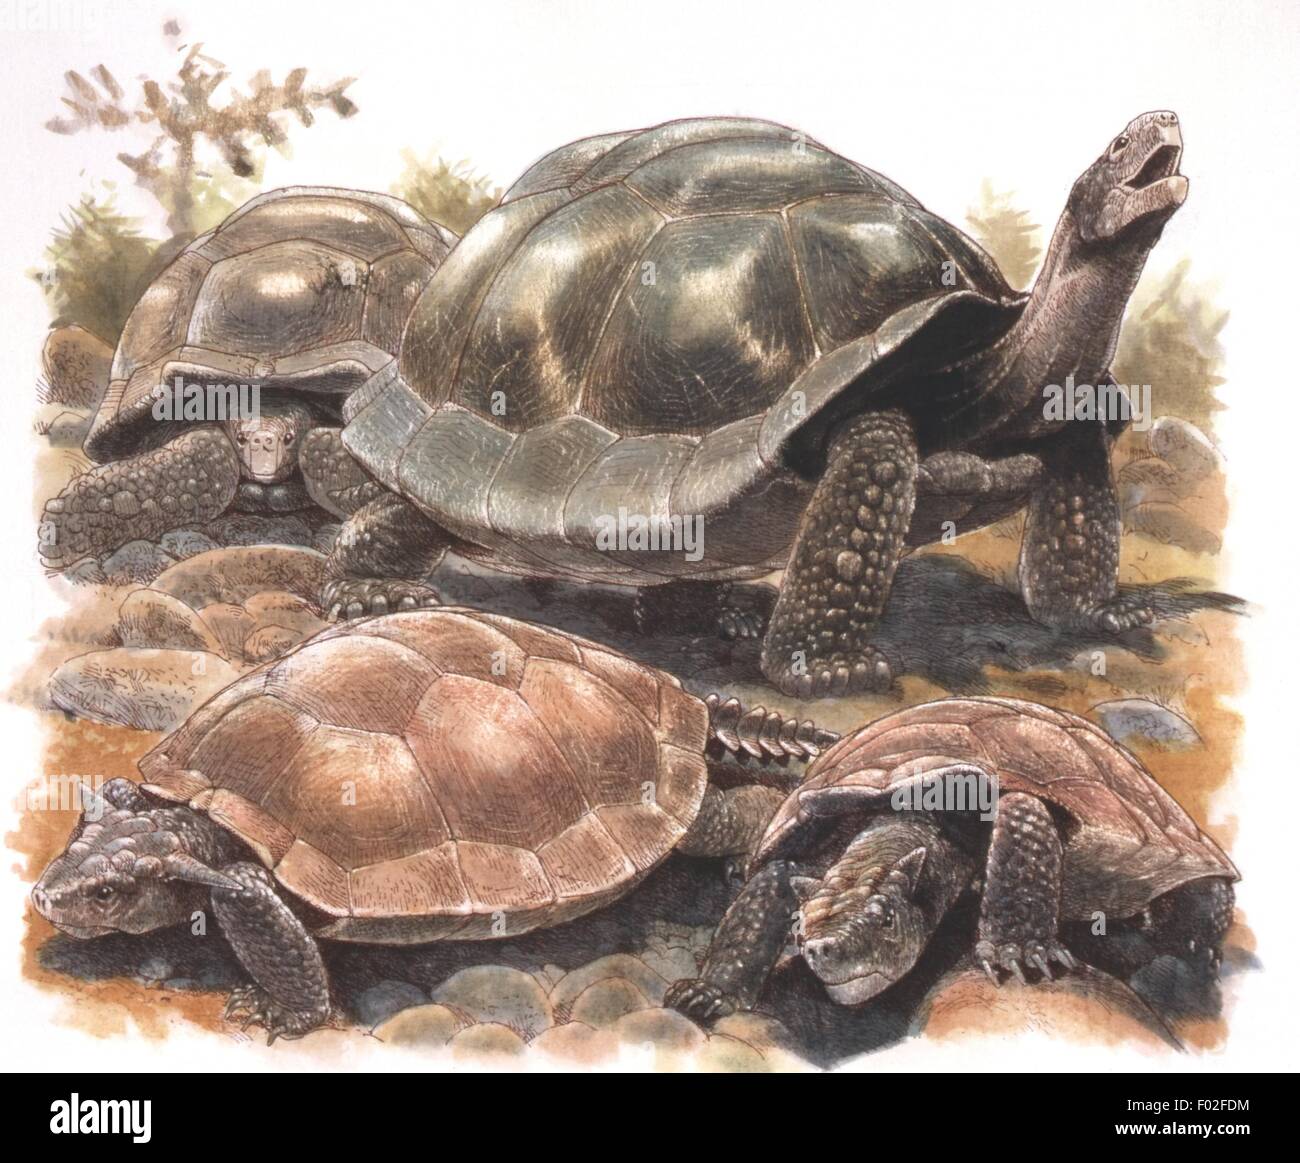 Zoologia - Rettili - tartarughe (Chelons) - Opere di J. Robins Foto Stock